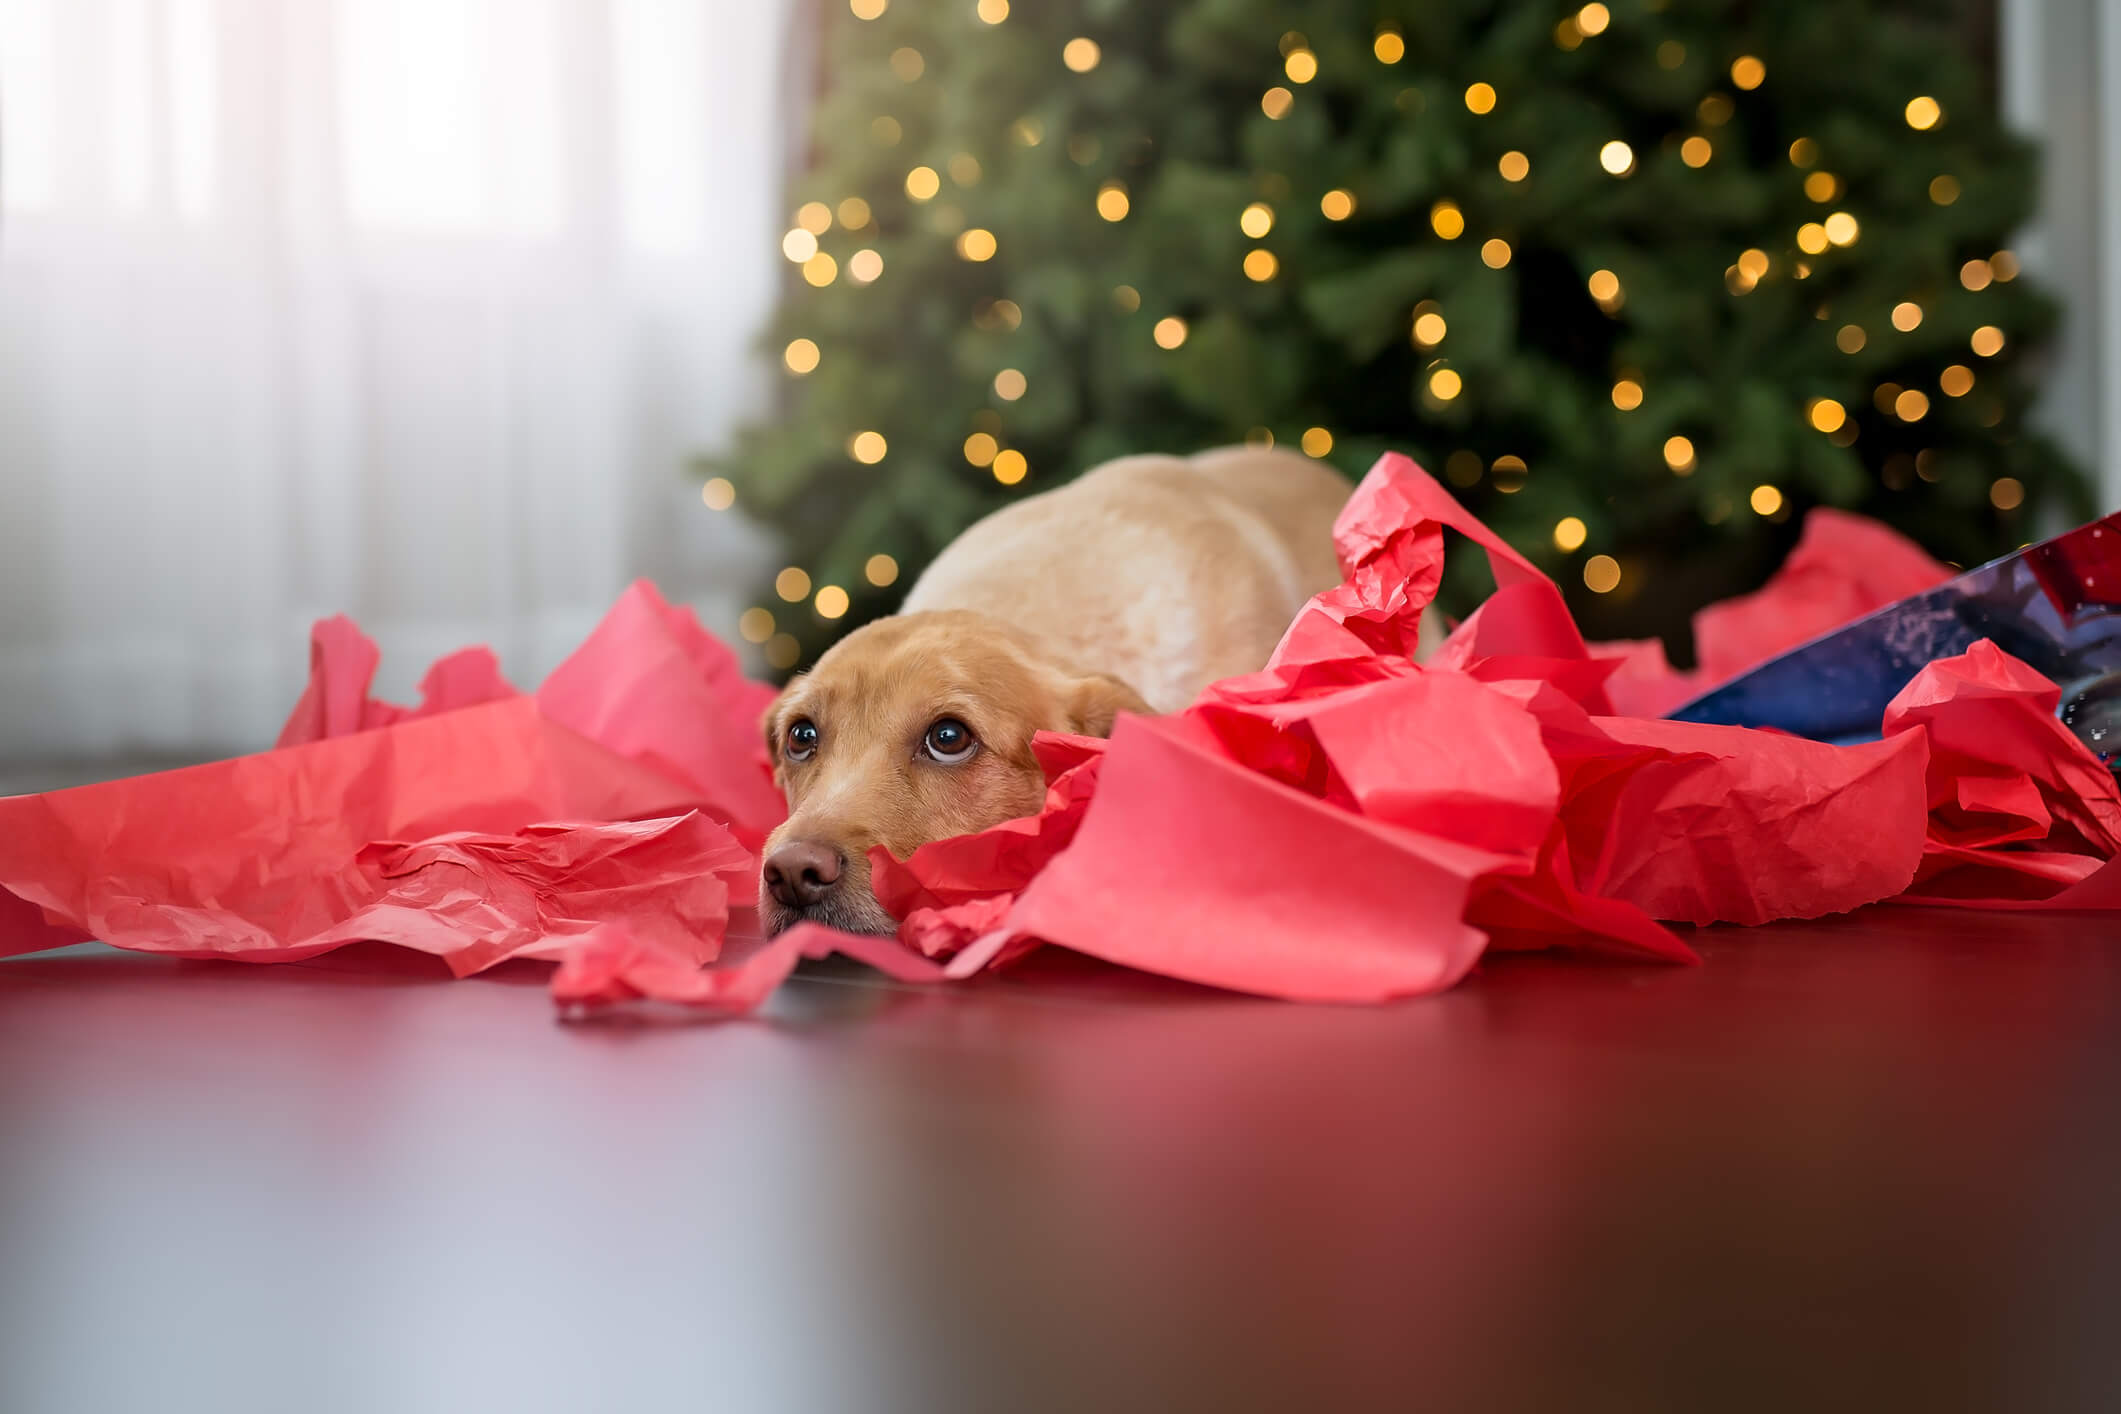 Verbringt ihr Weihnachten mit euren Hunden und Katzen? Dann verwöhnt sie mit kleinen Geschenken - schließlich sollen sie an den Feiertagen nicht lehr ausgehen. Frohes Fest!